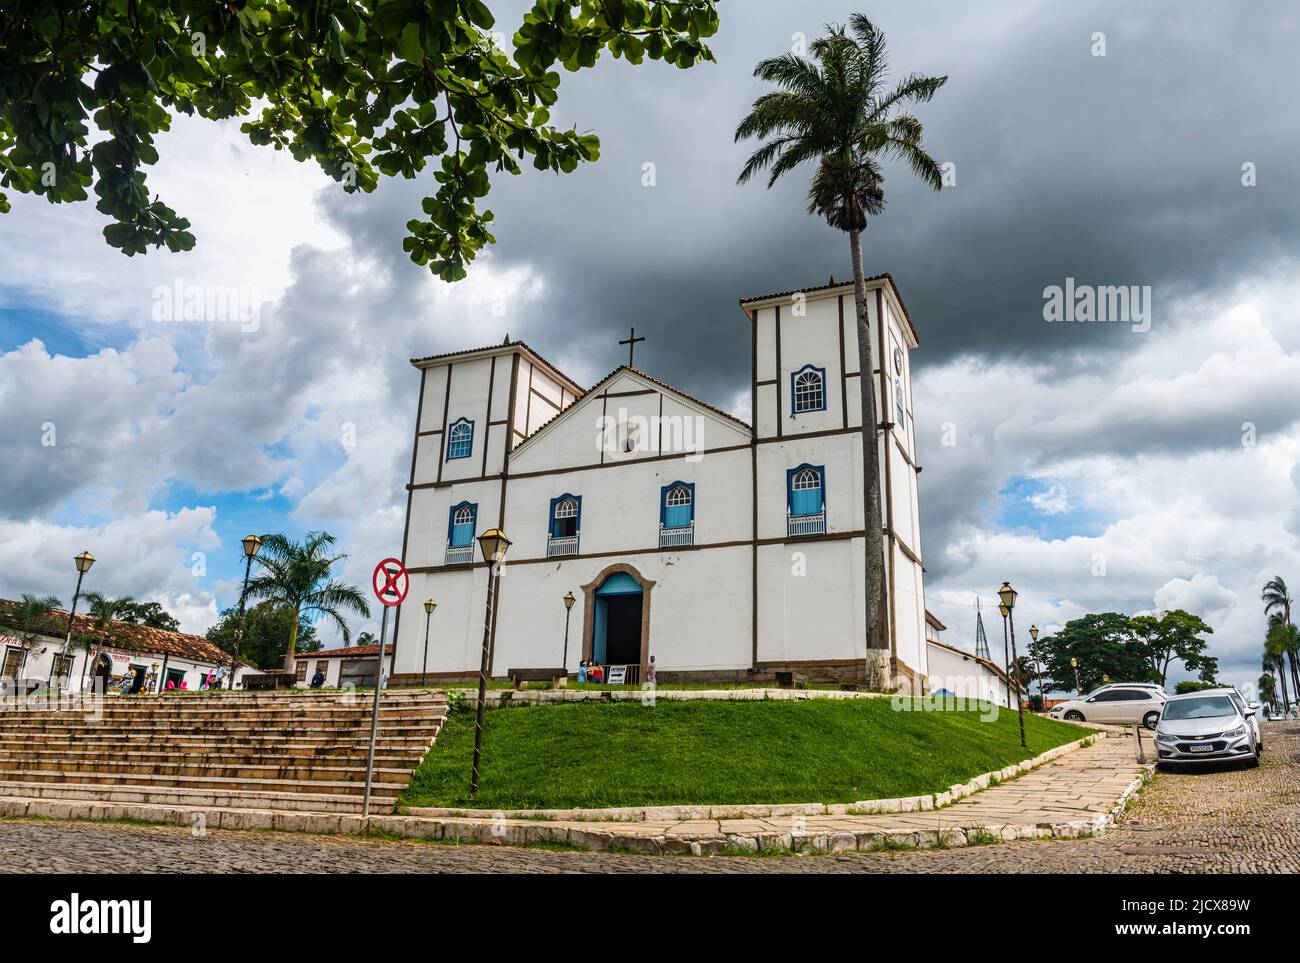 Igreja de Nosso Senhor do Bonfim, Pirenopolis, Goias, Brasil, Sudamérica Foto de stock